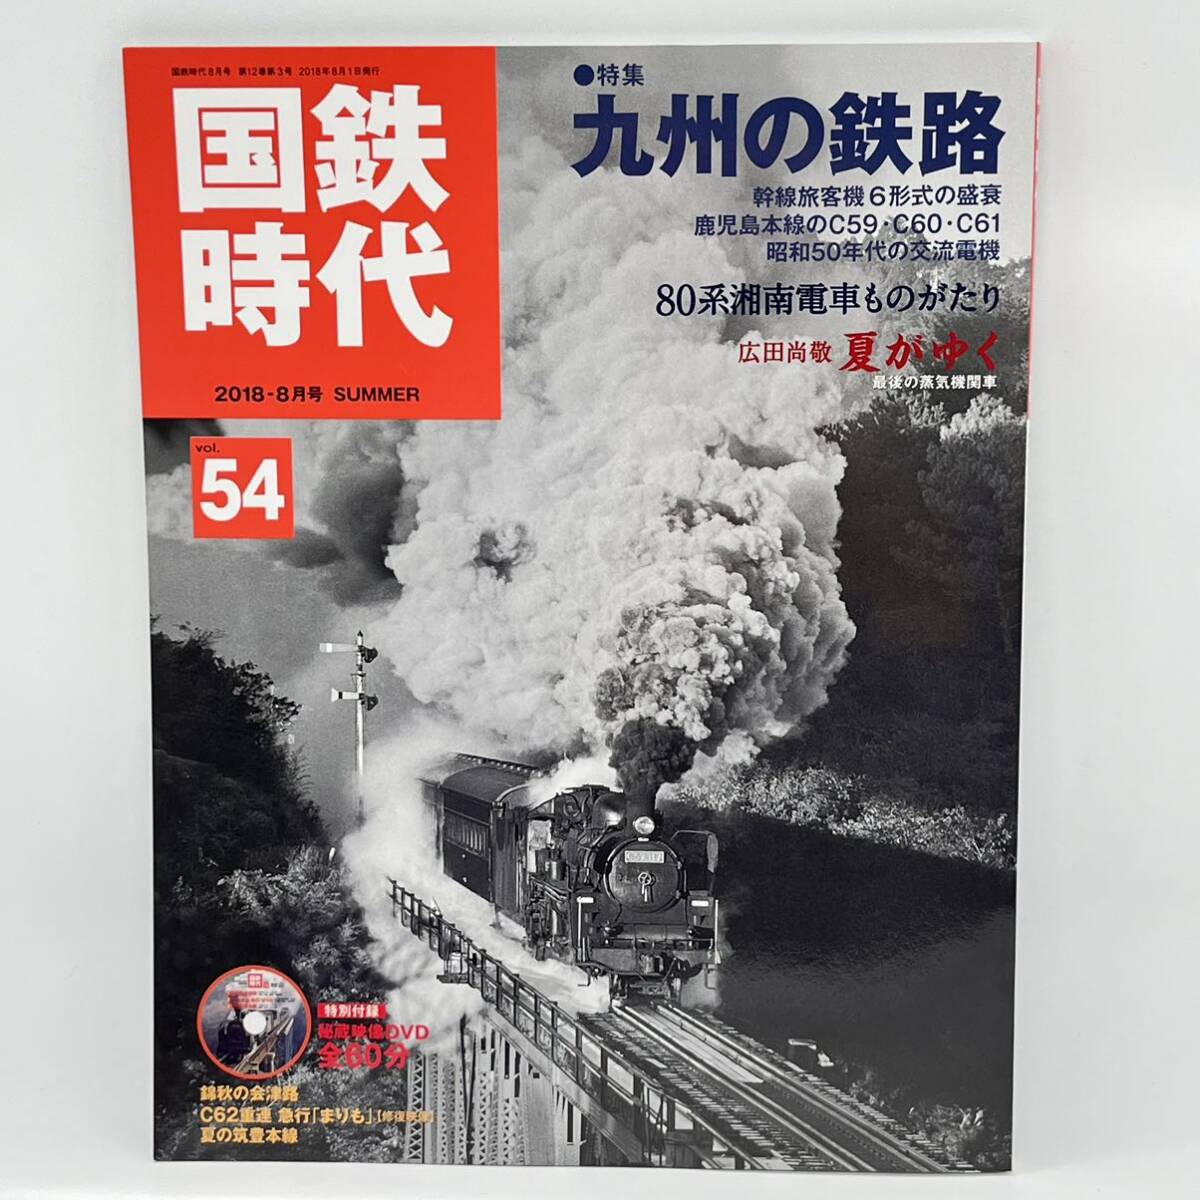  National Railways времена 2018-8 месяц номер Vol.54[ специальный выпуск ] Kyushu. металлический .80 серия Shonan электропоезд было использовано ... широкий рисовое поле более того .. магазин изображение нераспечатанный DVD есть 